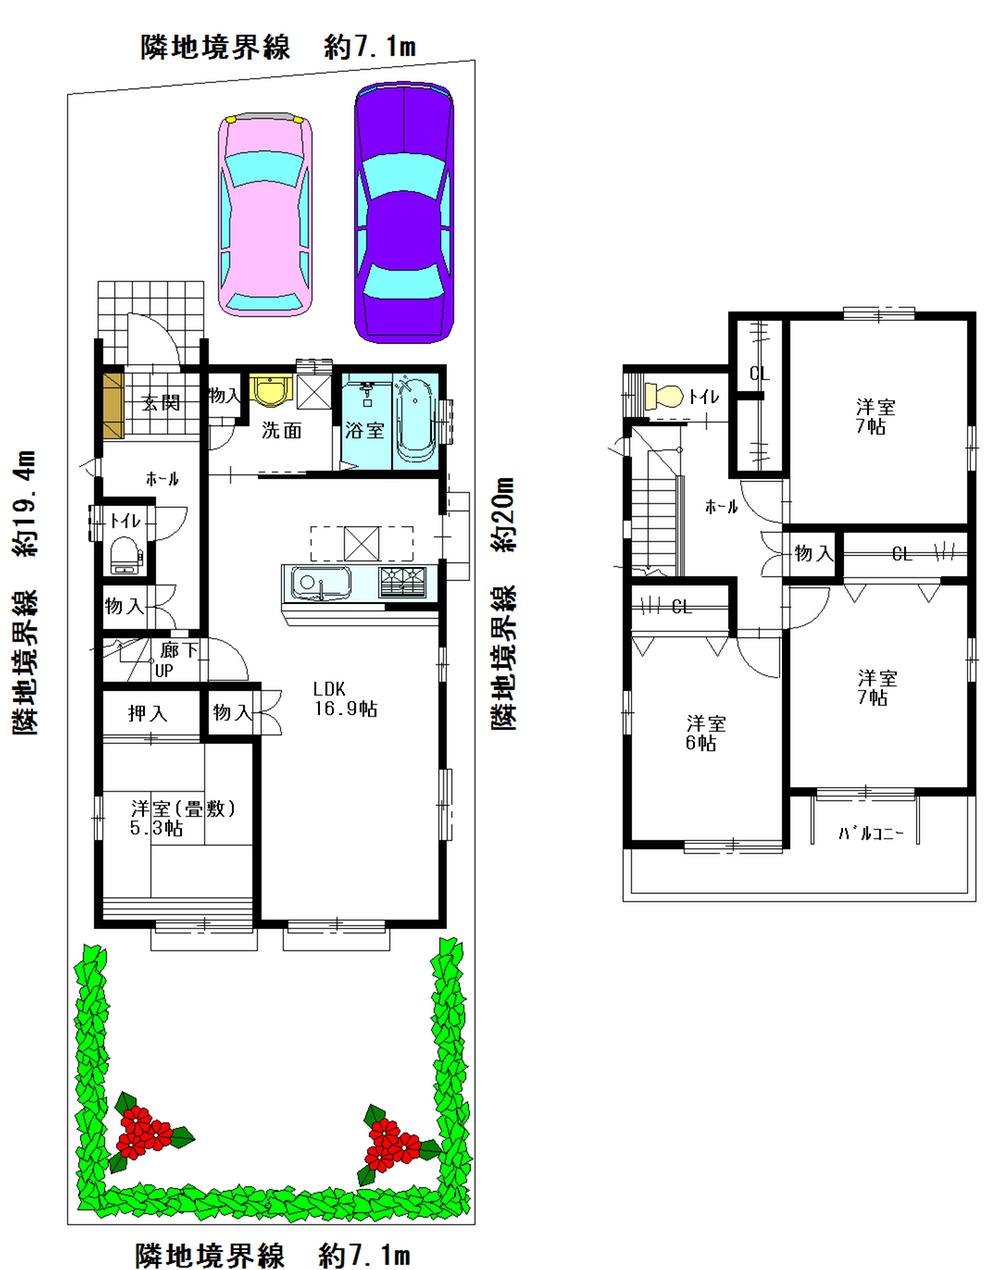 Floor plan. 28,300,000 yen, 4LDK, Land area 141.12 sq m , Building area 105.8 sq m floor plan